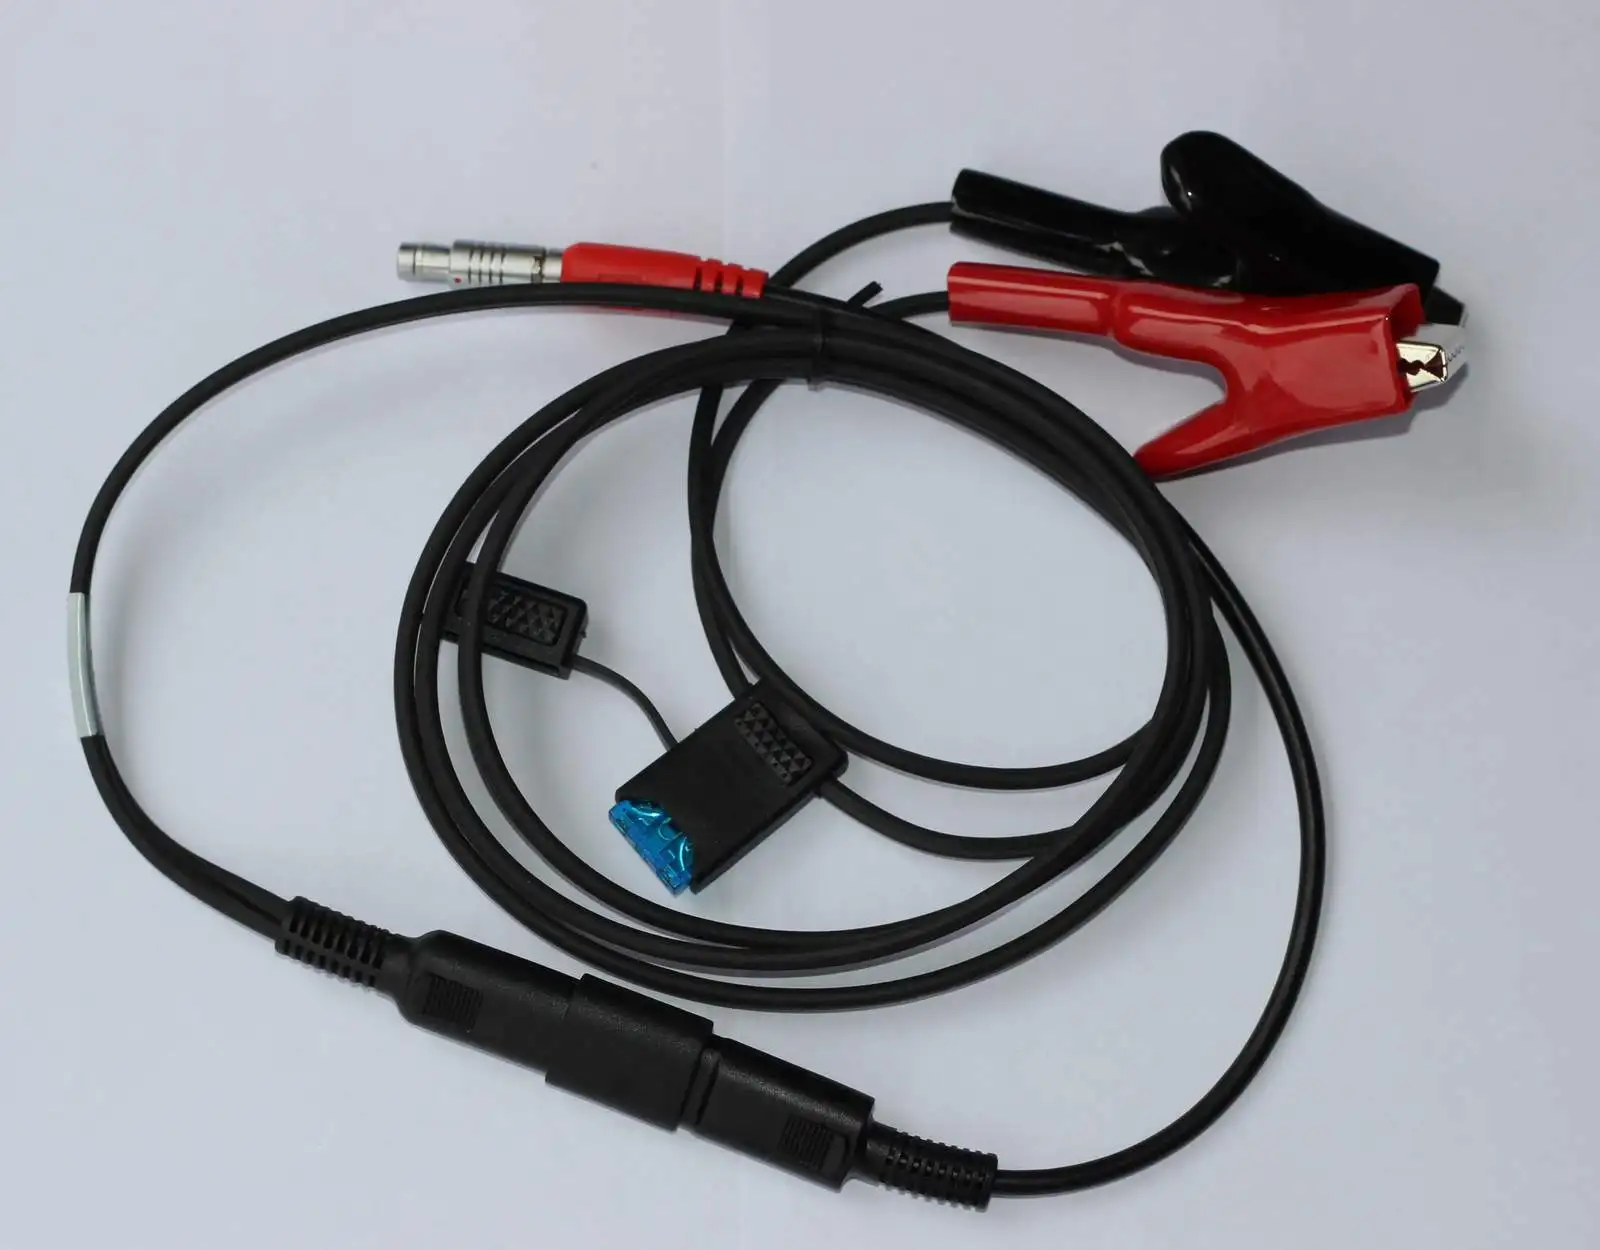 

Внешний кабель питания с зажимами типа «крокодил» для Topcon GPS HiPer или HiPer Lite